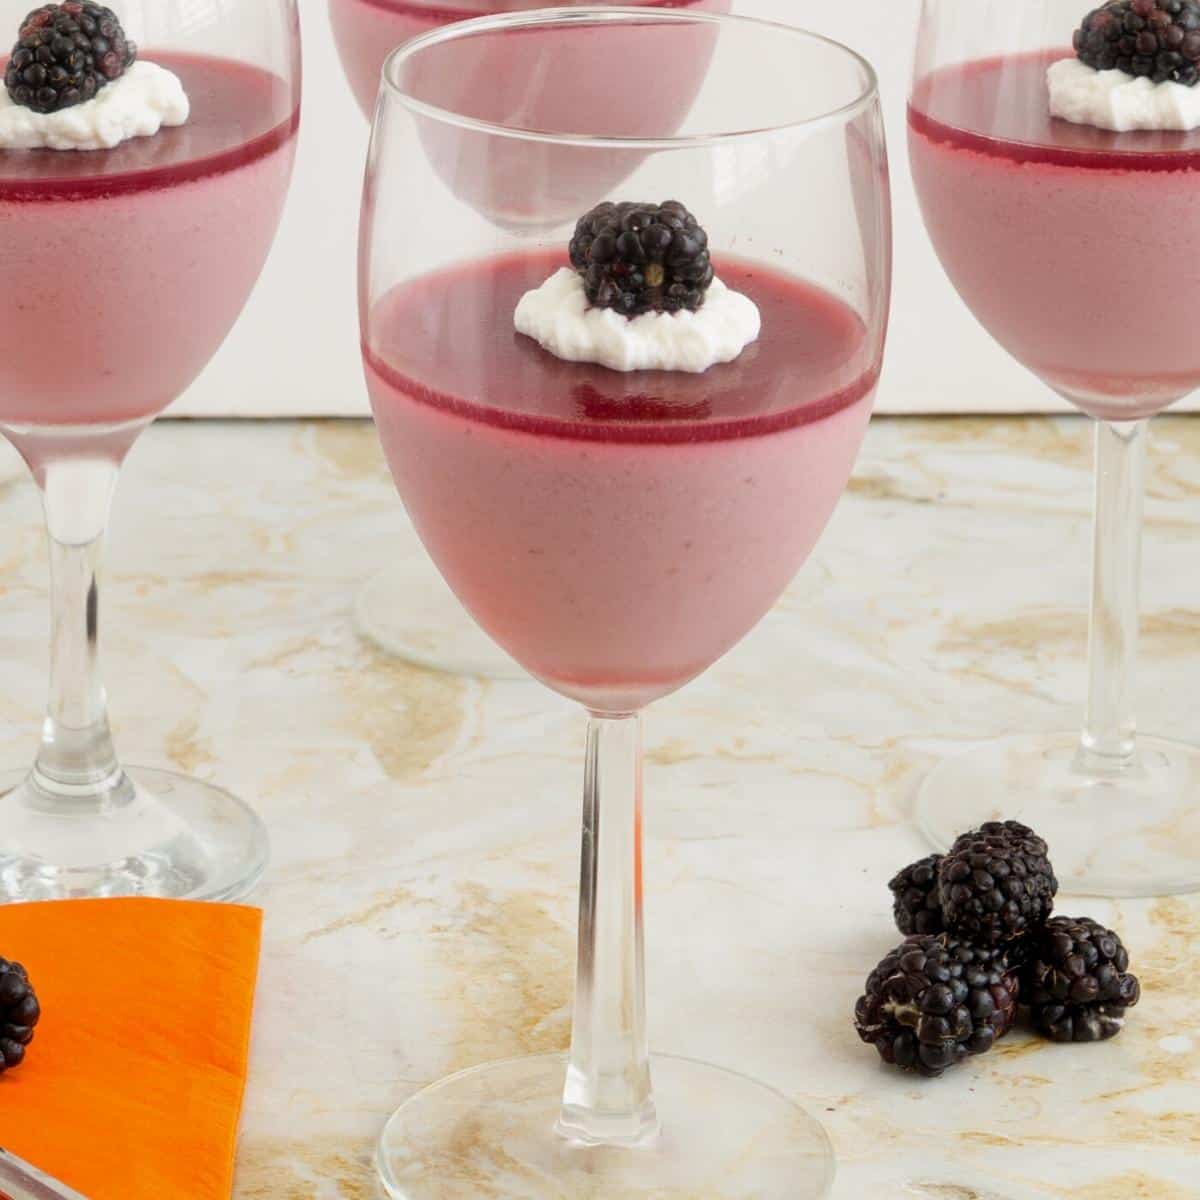 Panna cotta with blackberry jello in wine glasses.